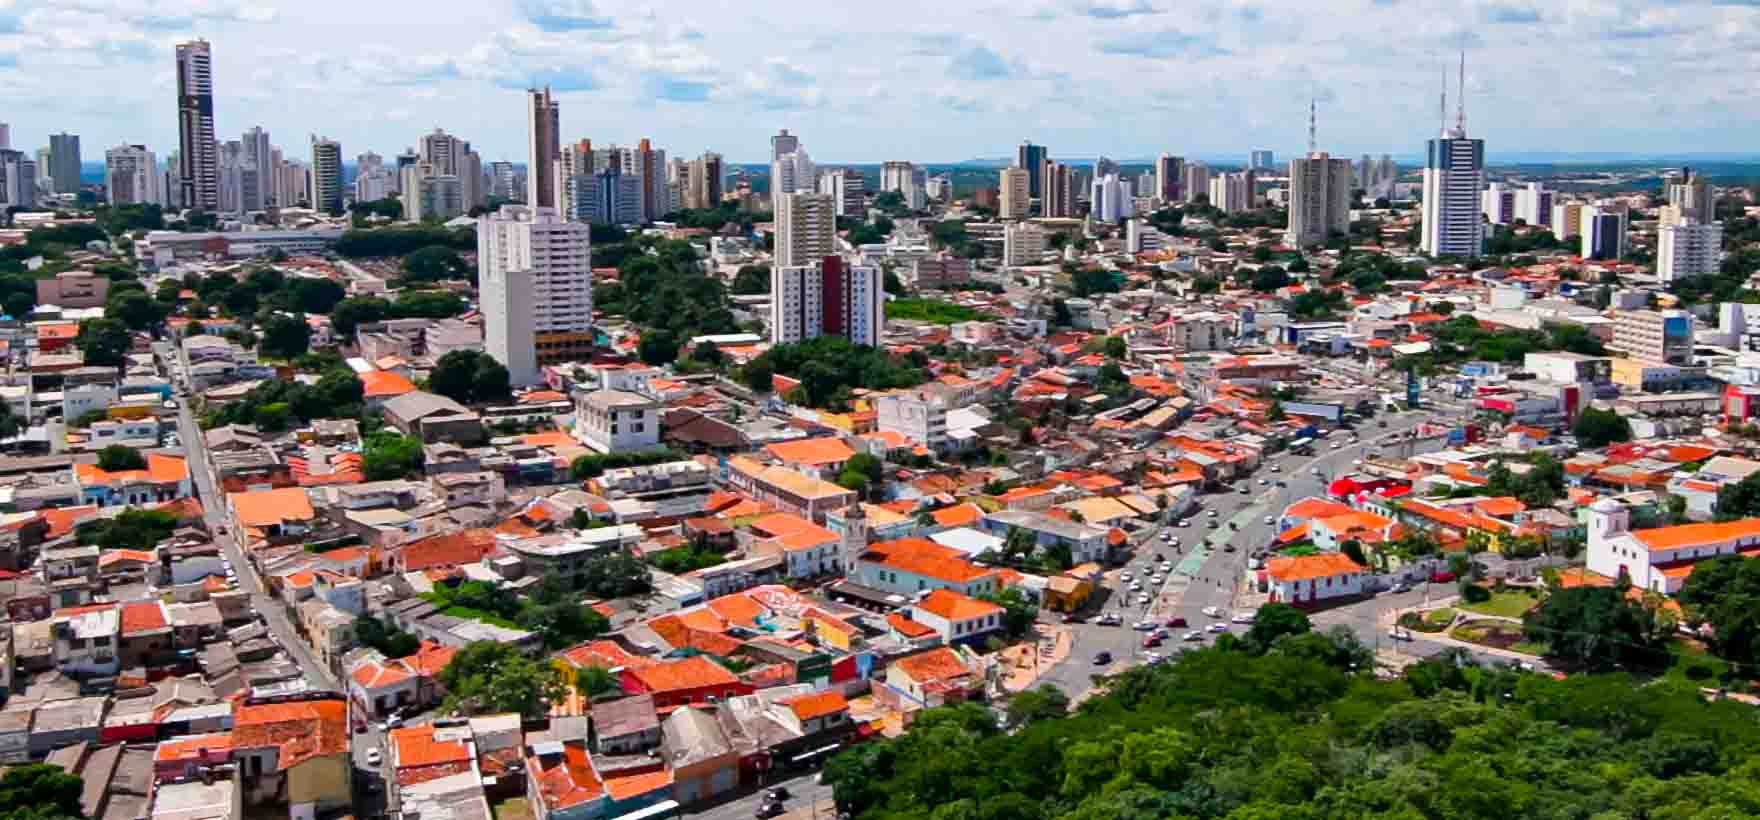 Secovi-MT - Fecomércio-MT - Mato Grosso - Mercado imobiliário - Cuiabá - Terceiro trimestre